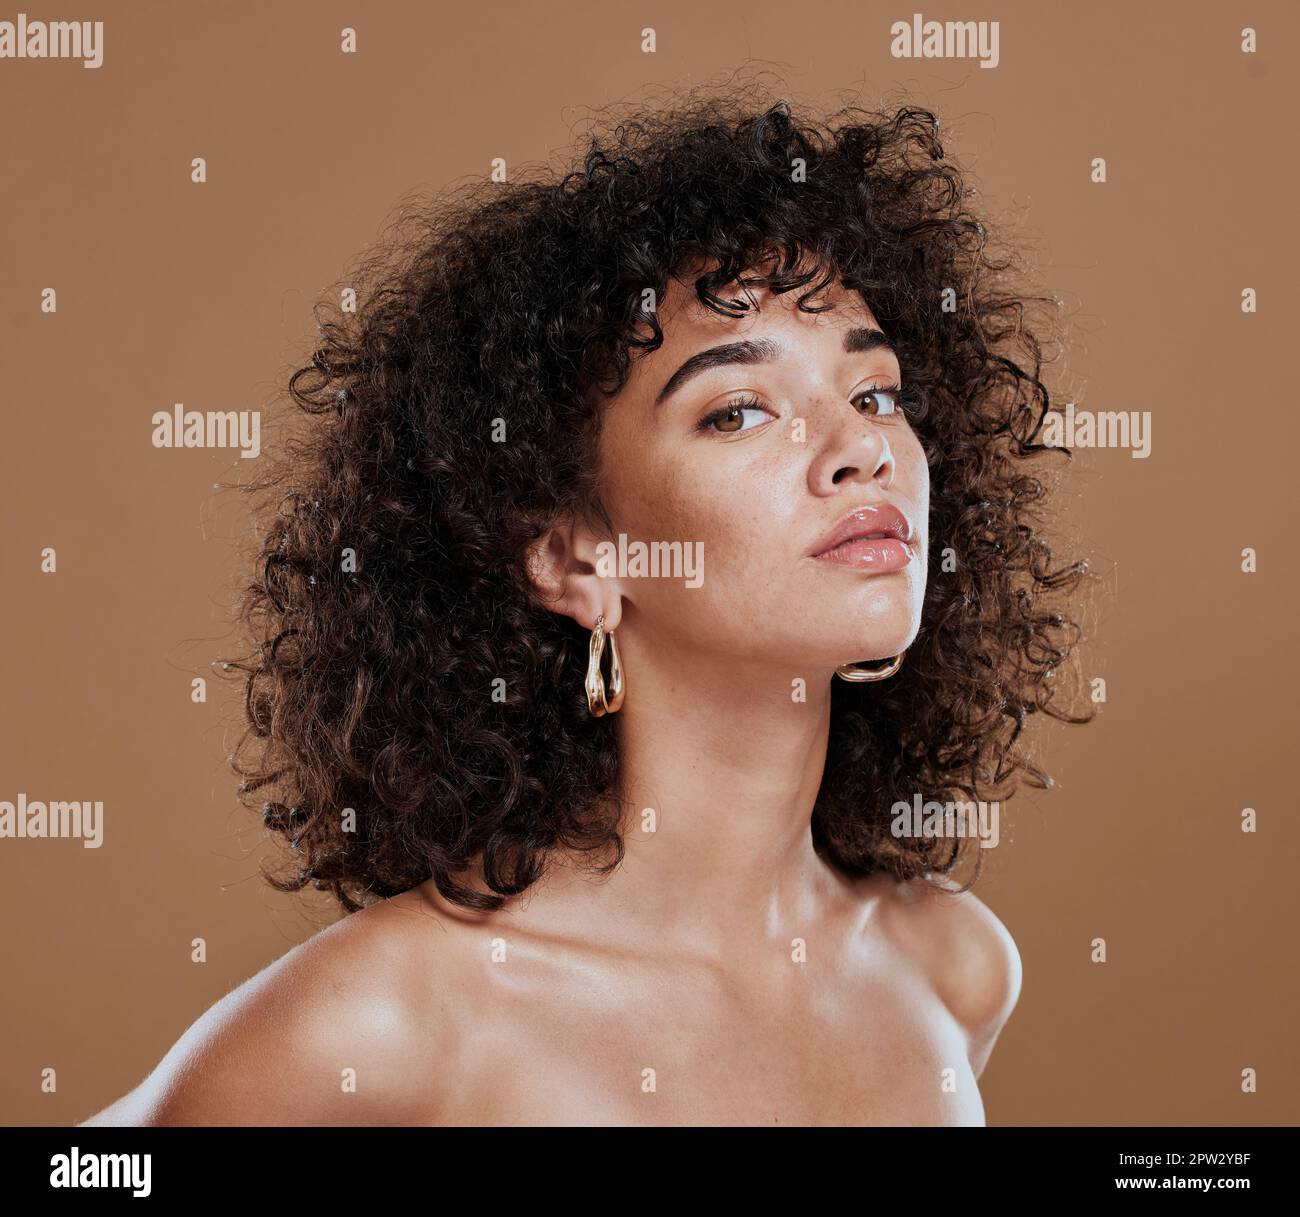 Black Woman, Beauty and Skincare Face Portrait für natürliche Afro-, Gesichts- oder Haarpflegekosmetik. Gesundes, schönes und selbstbewusstes Modell mit lockigen Haaren Stockfoto